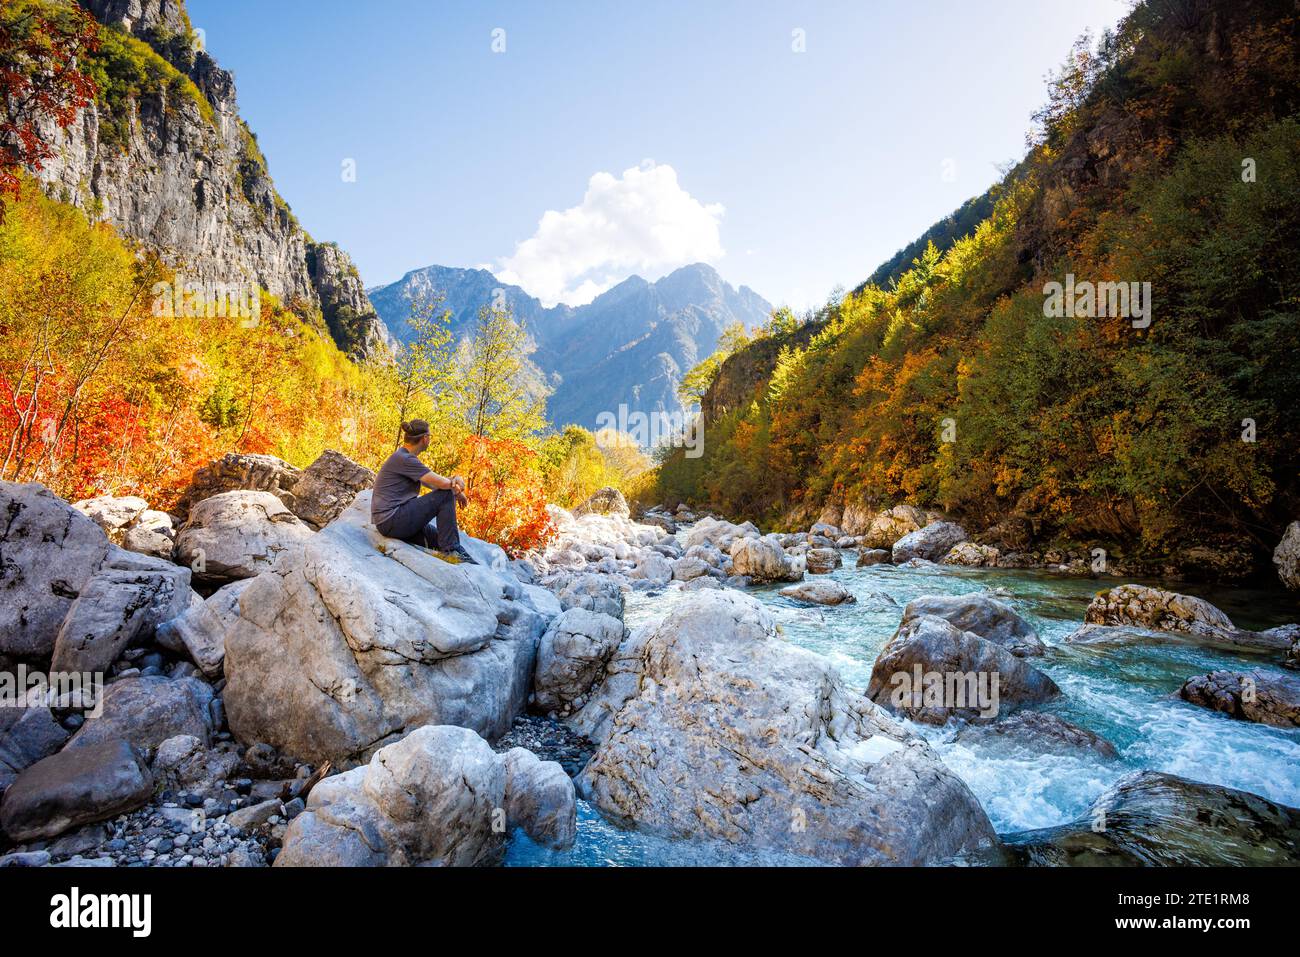 Mann, der auf einem Felsen in der Nähe eines Flusses in den bunten albanischen Alpen sitzt Stockfoto